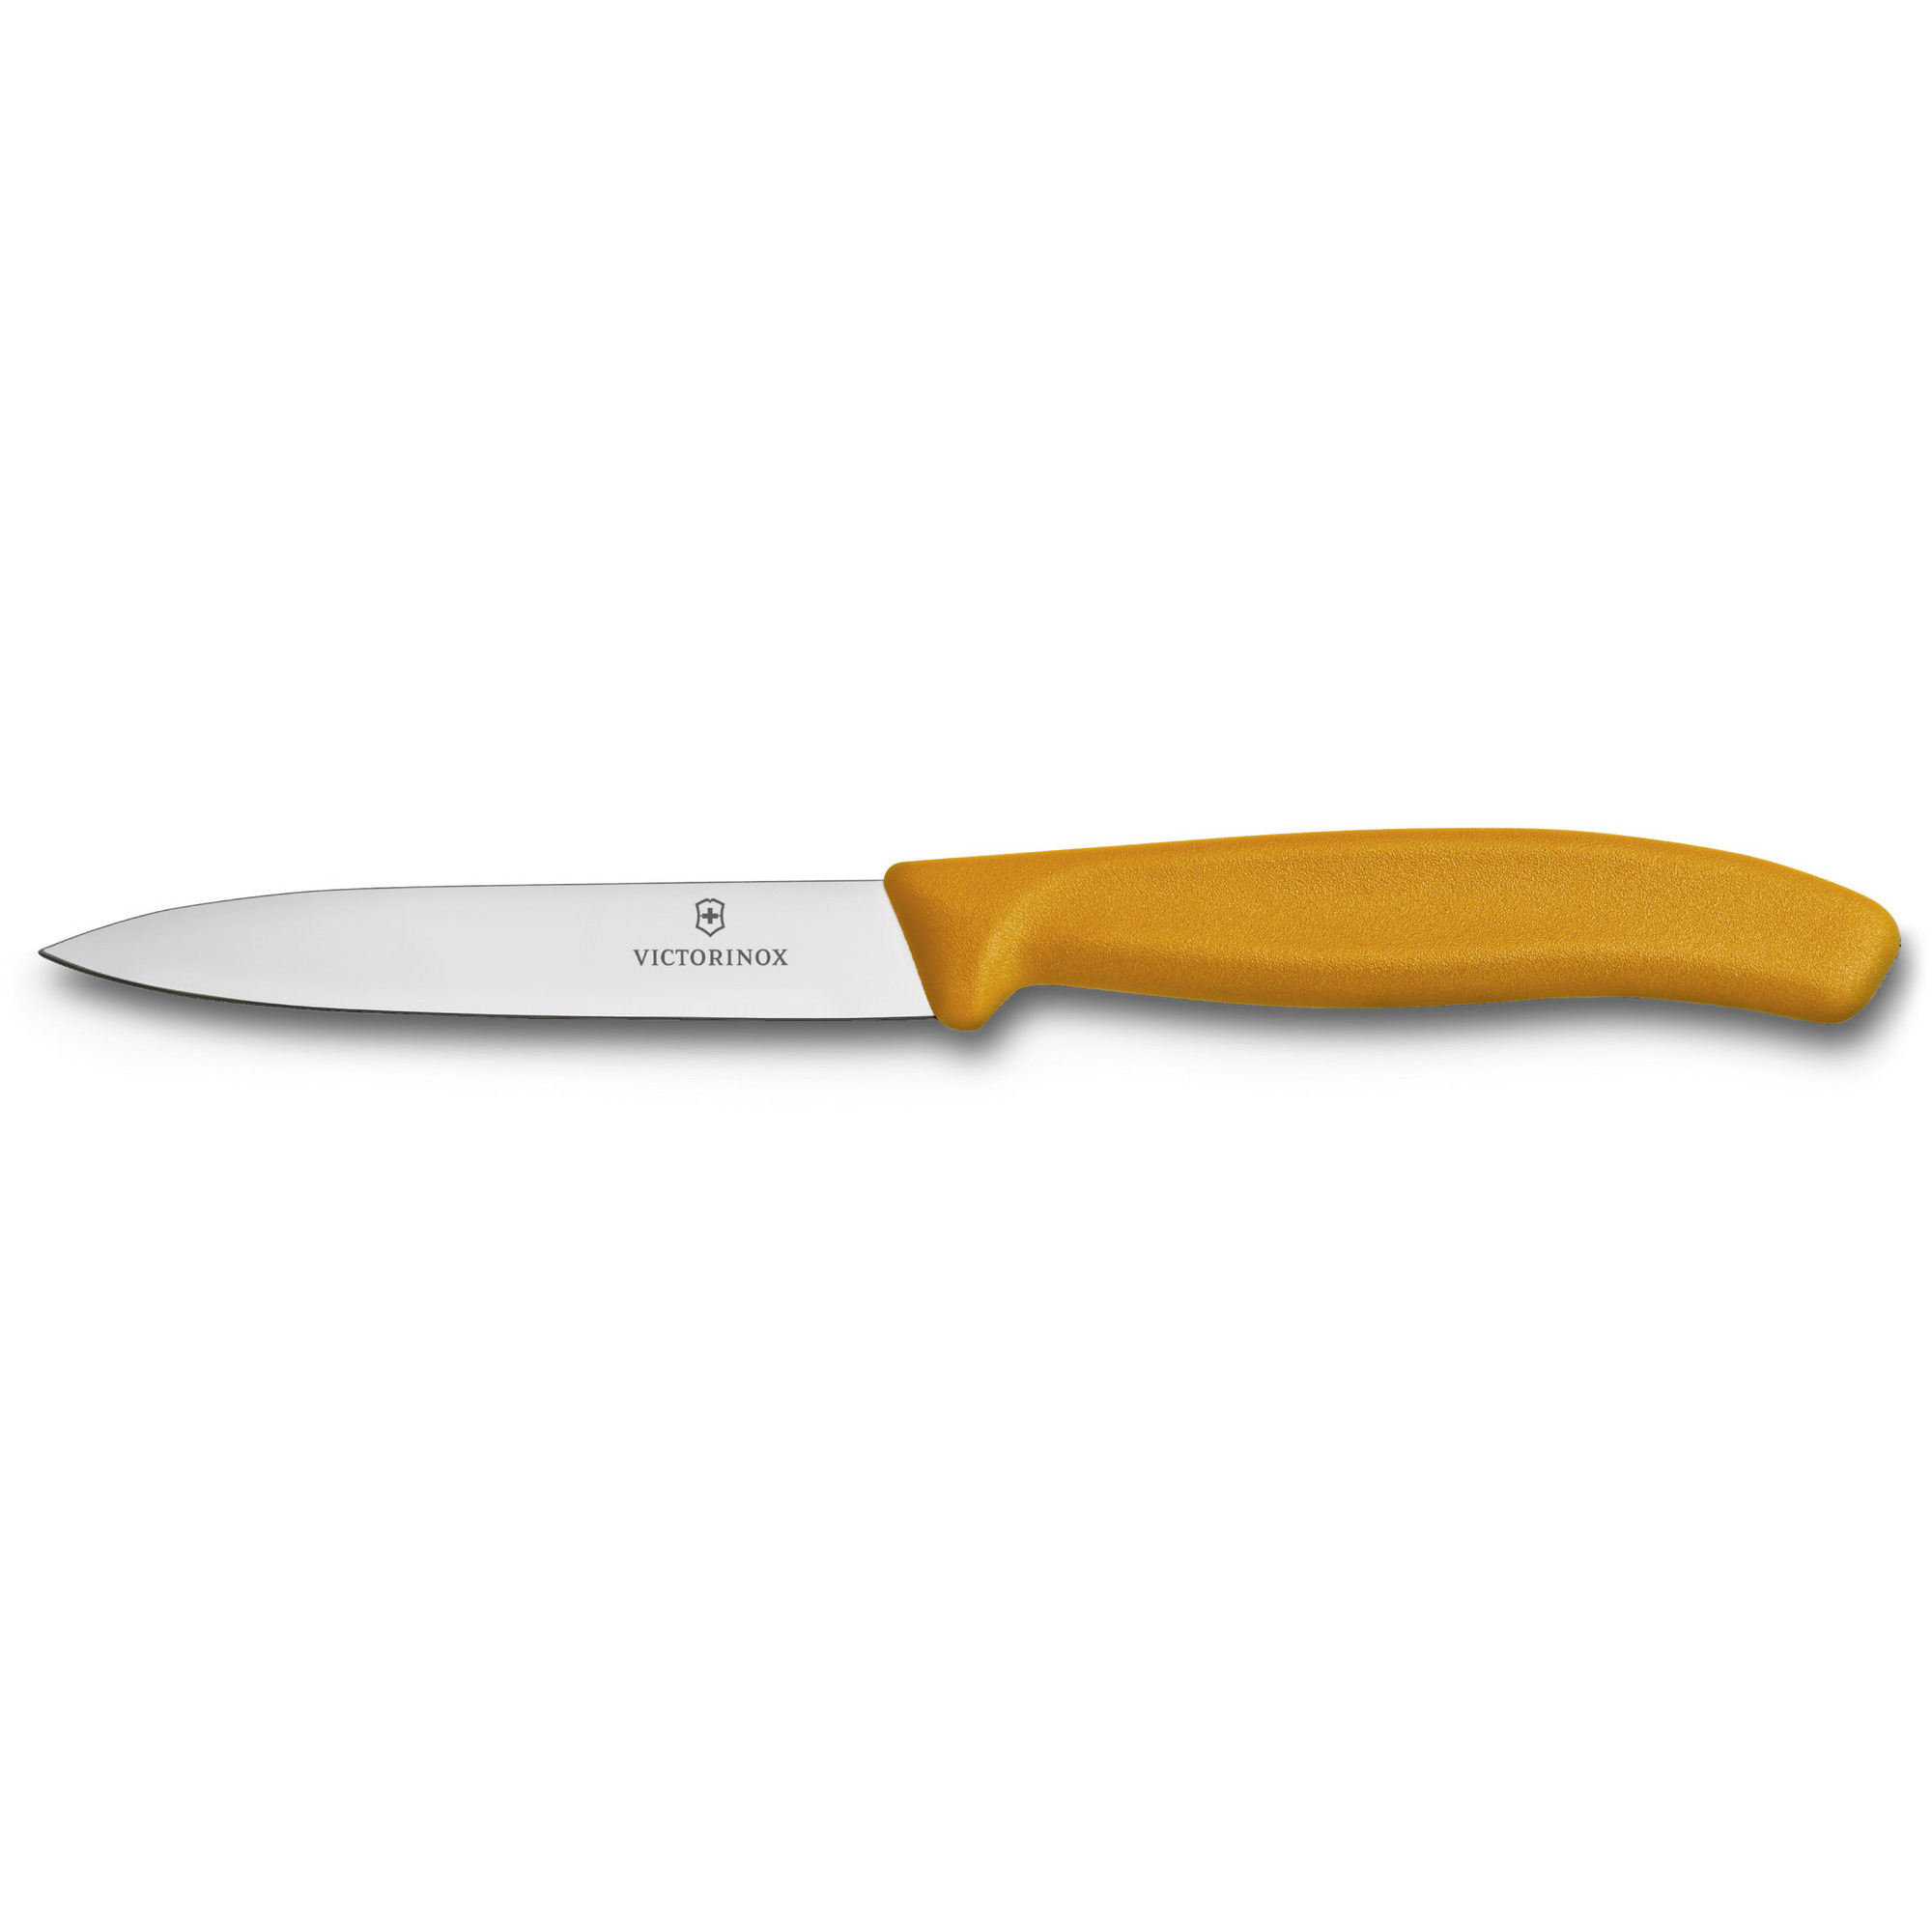 Victorinox Grøntsags- og skrællekniv med nylonhåndtag i orange, 10 cm.